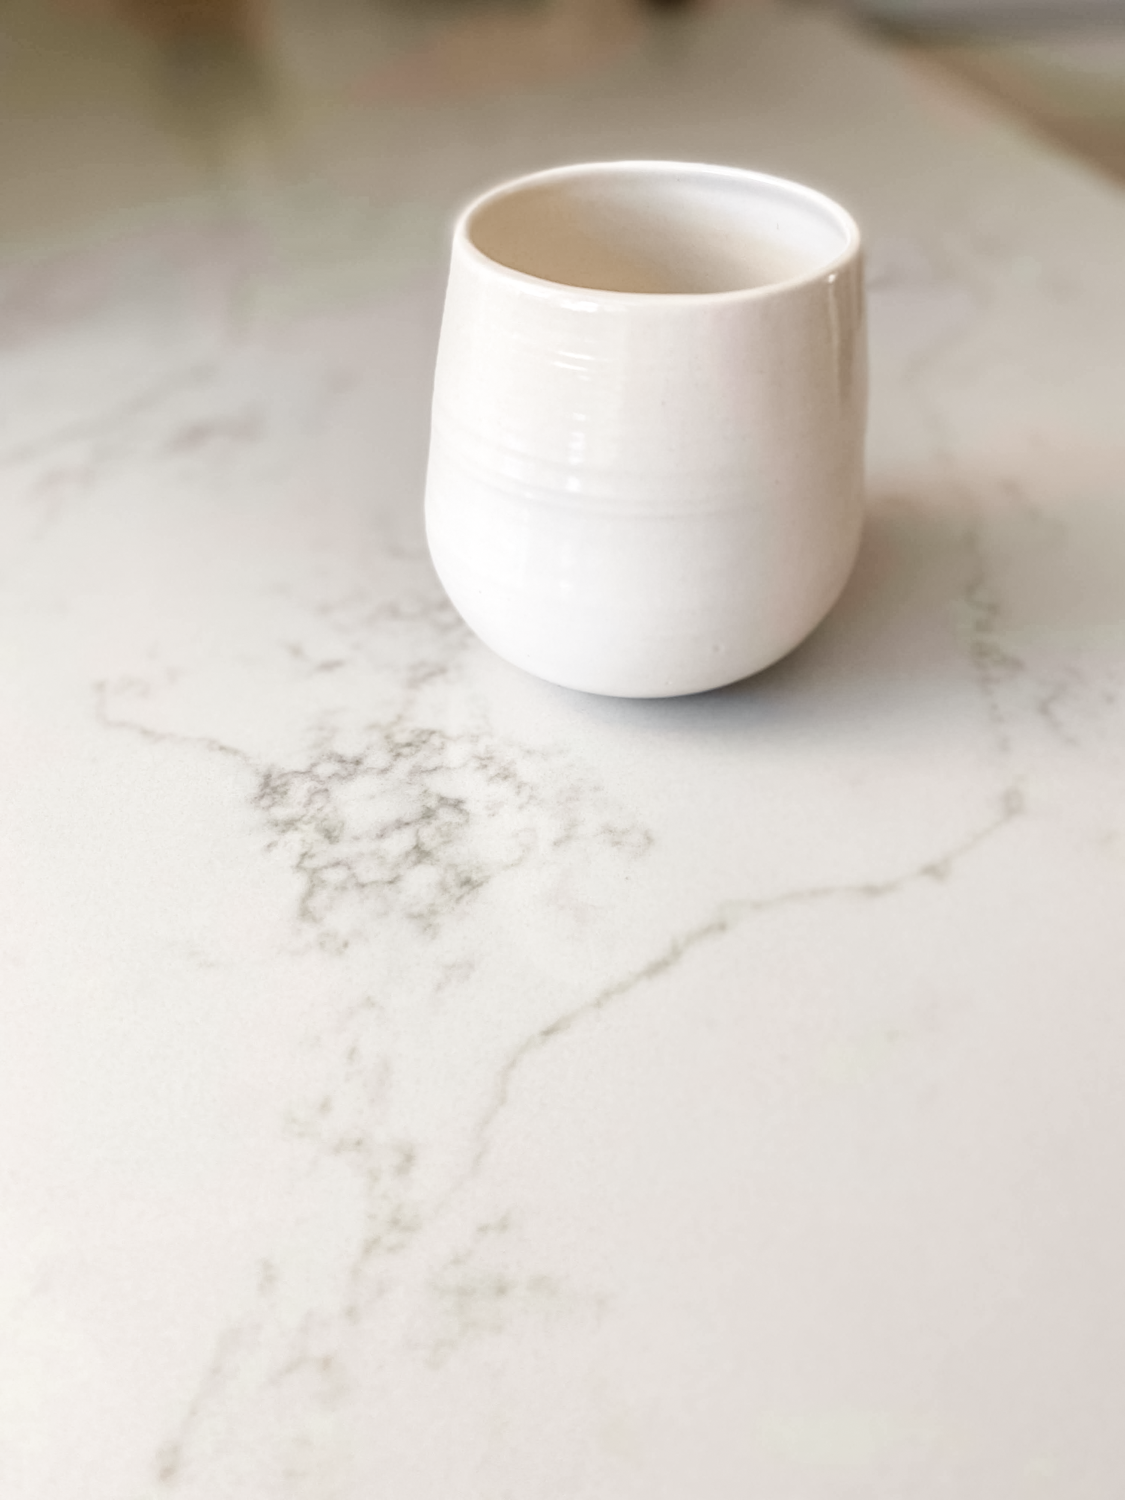 White ceramic tumbler